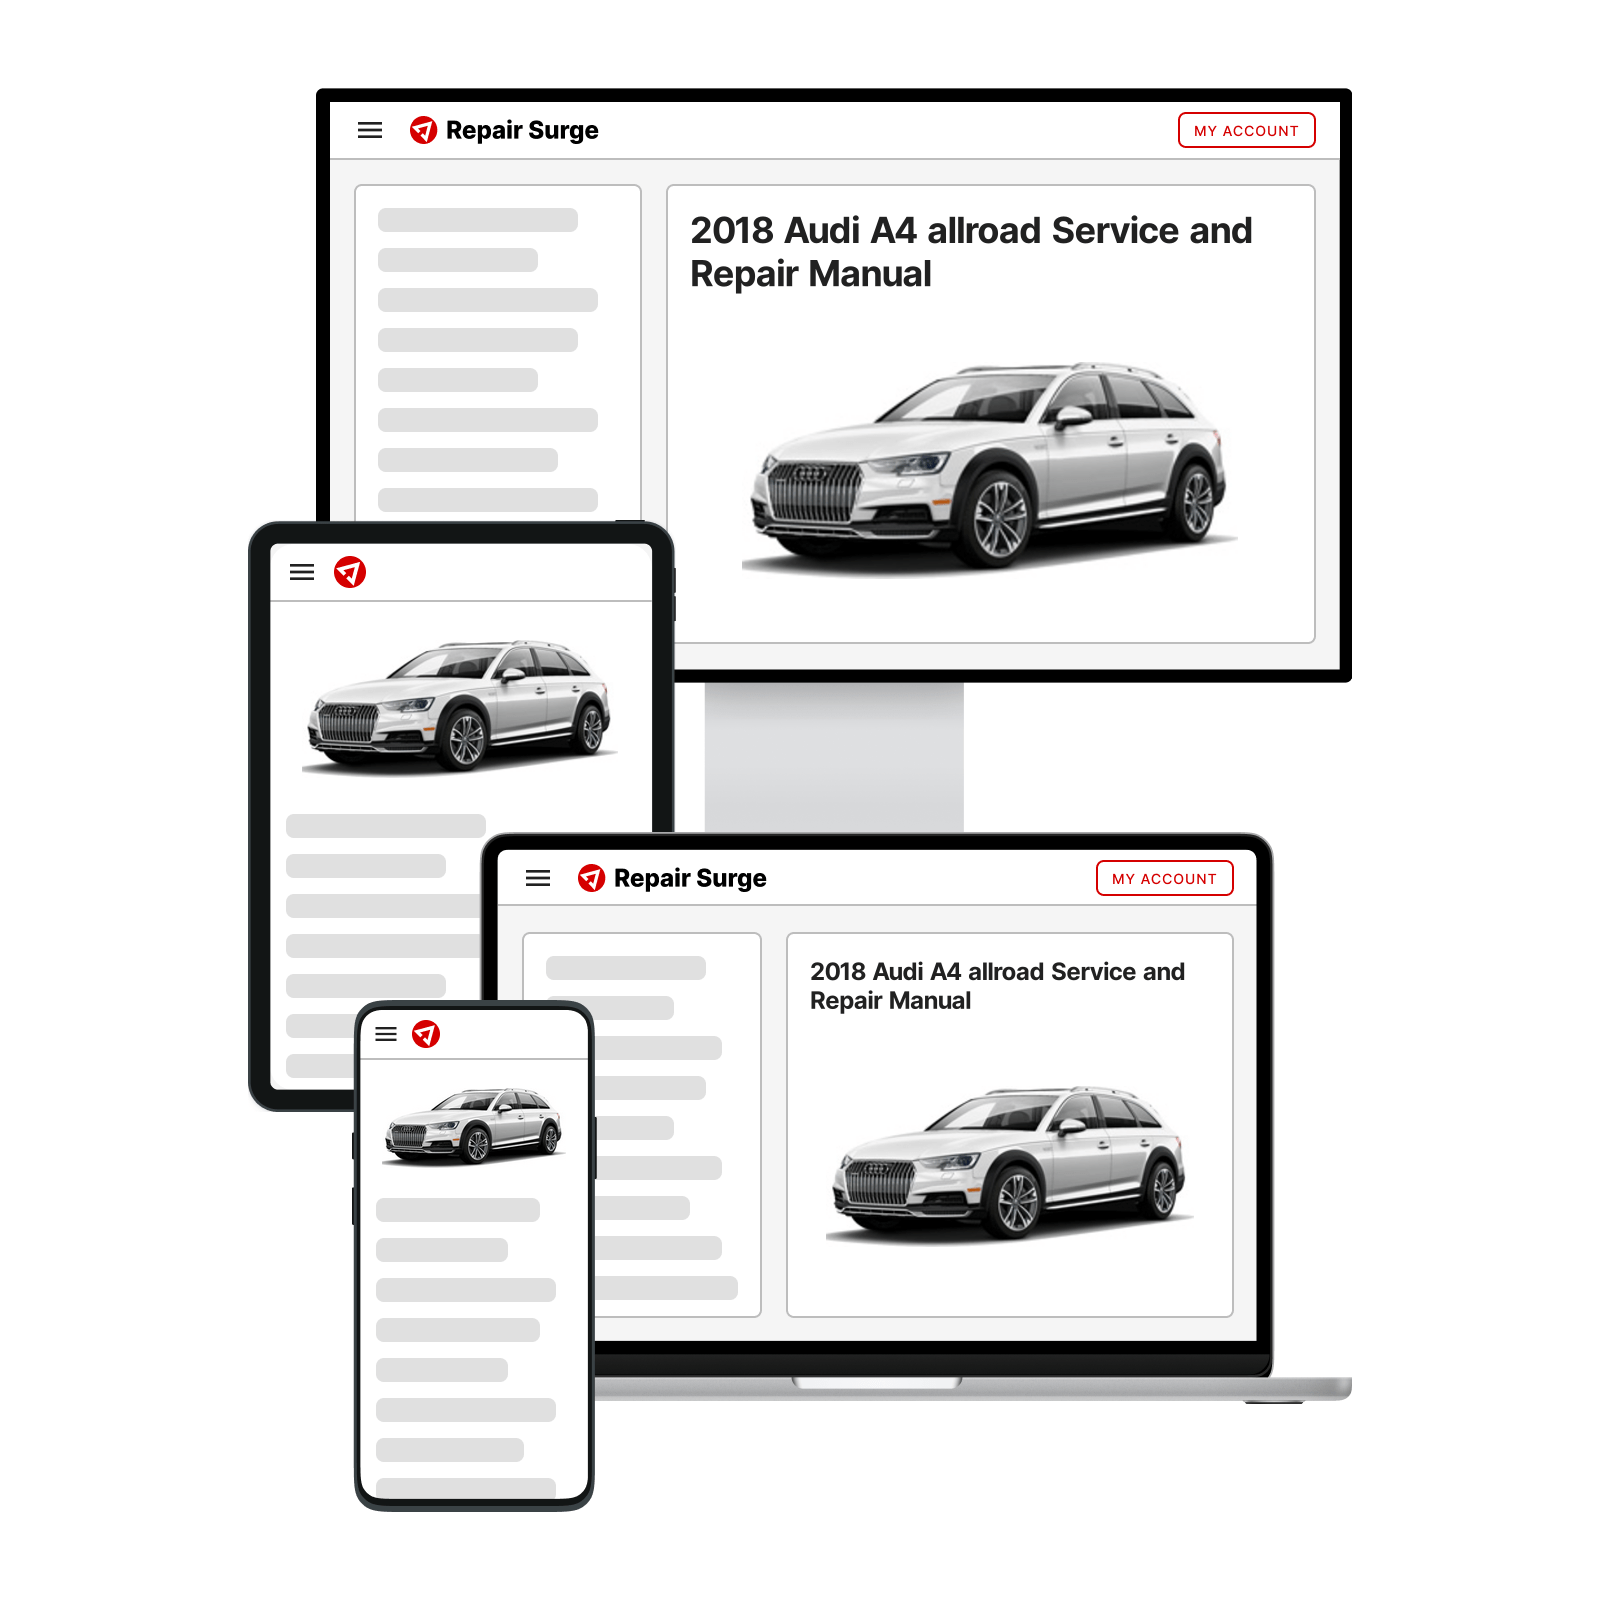 2018 Audi A4 allroad service and repair manual hero image